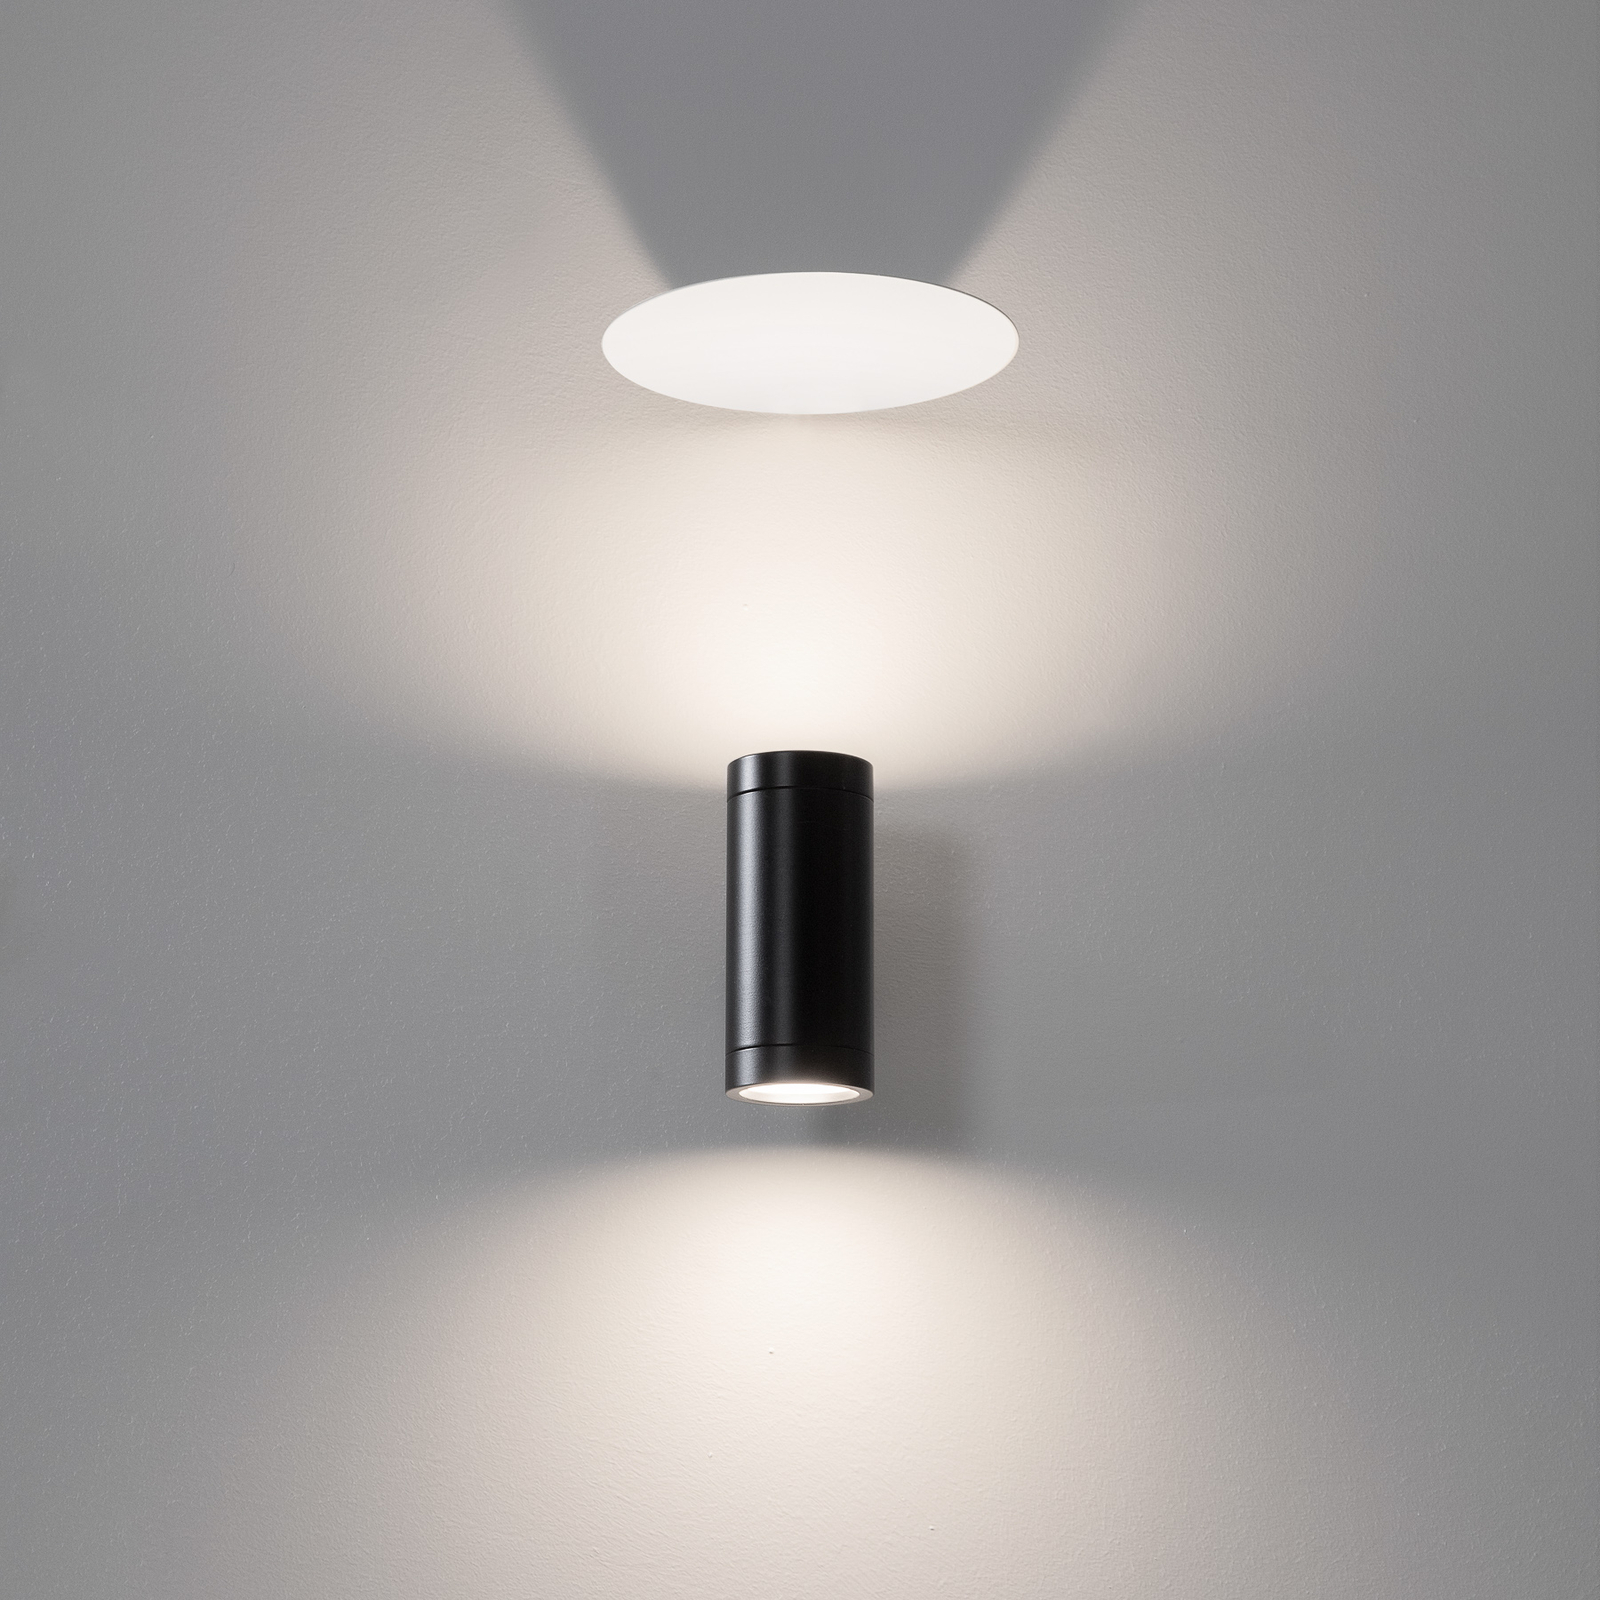 Karman Deflektor voor Movida LED wandlamp wit